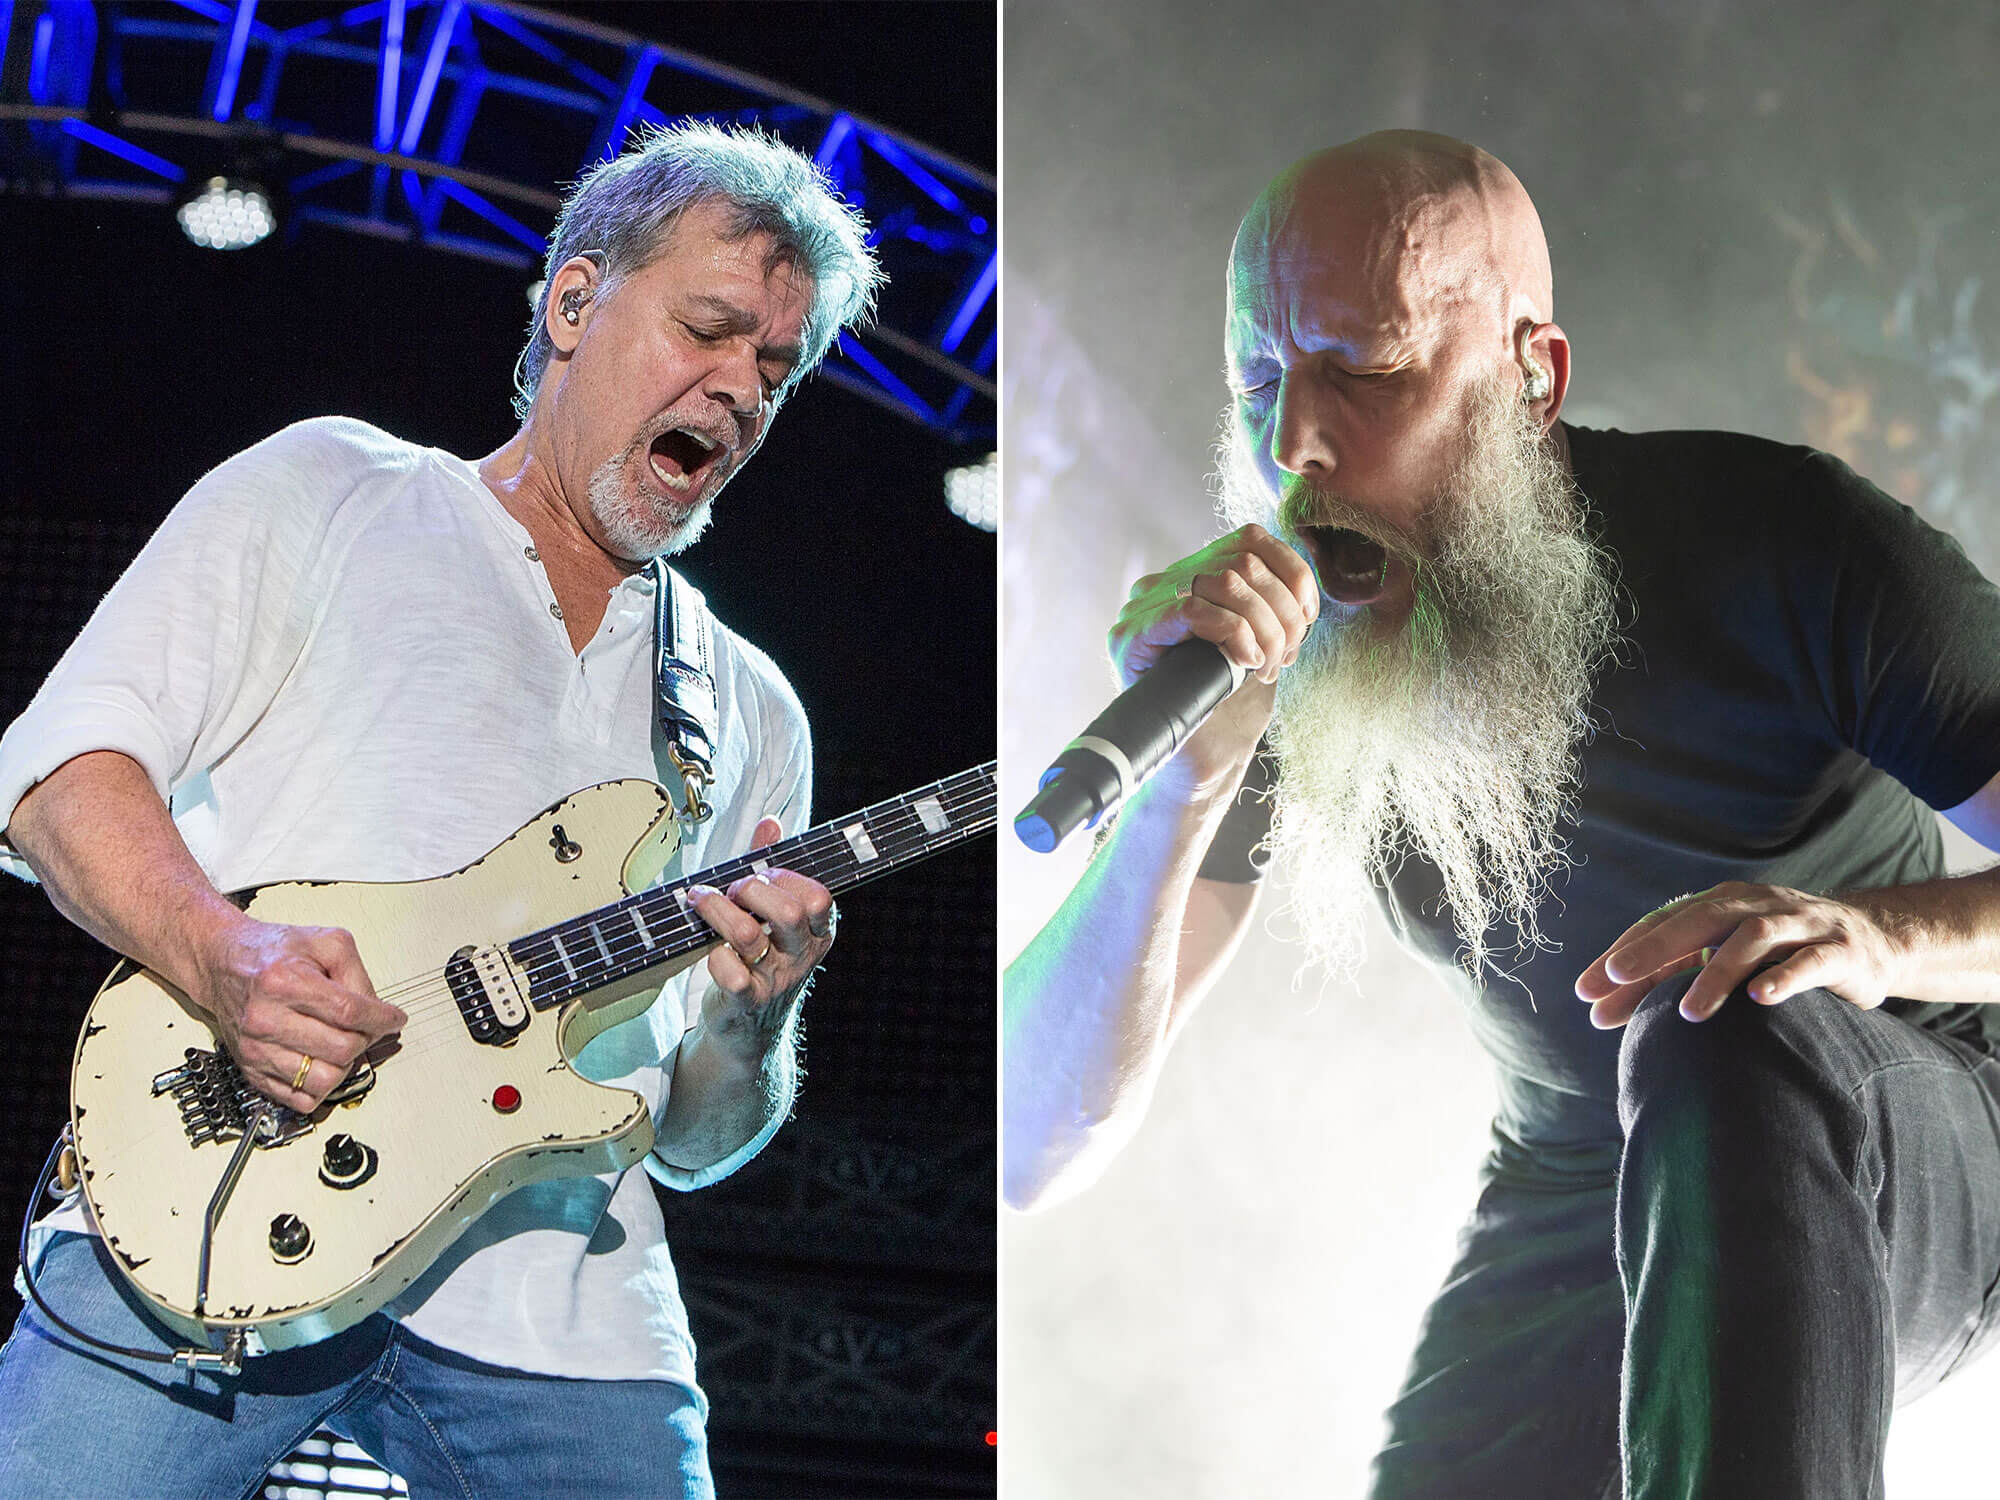 [L-R] Eddie Van Halen and Jens Kidman of Meshuggah